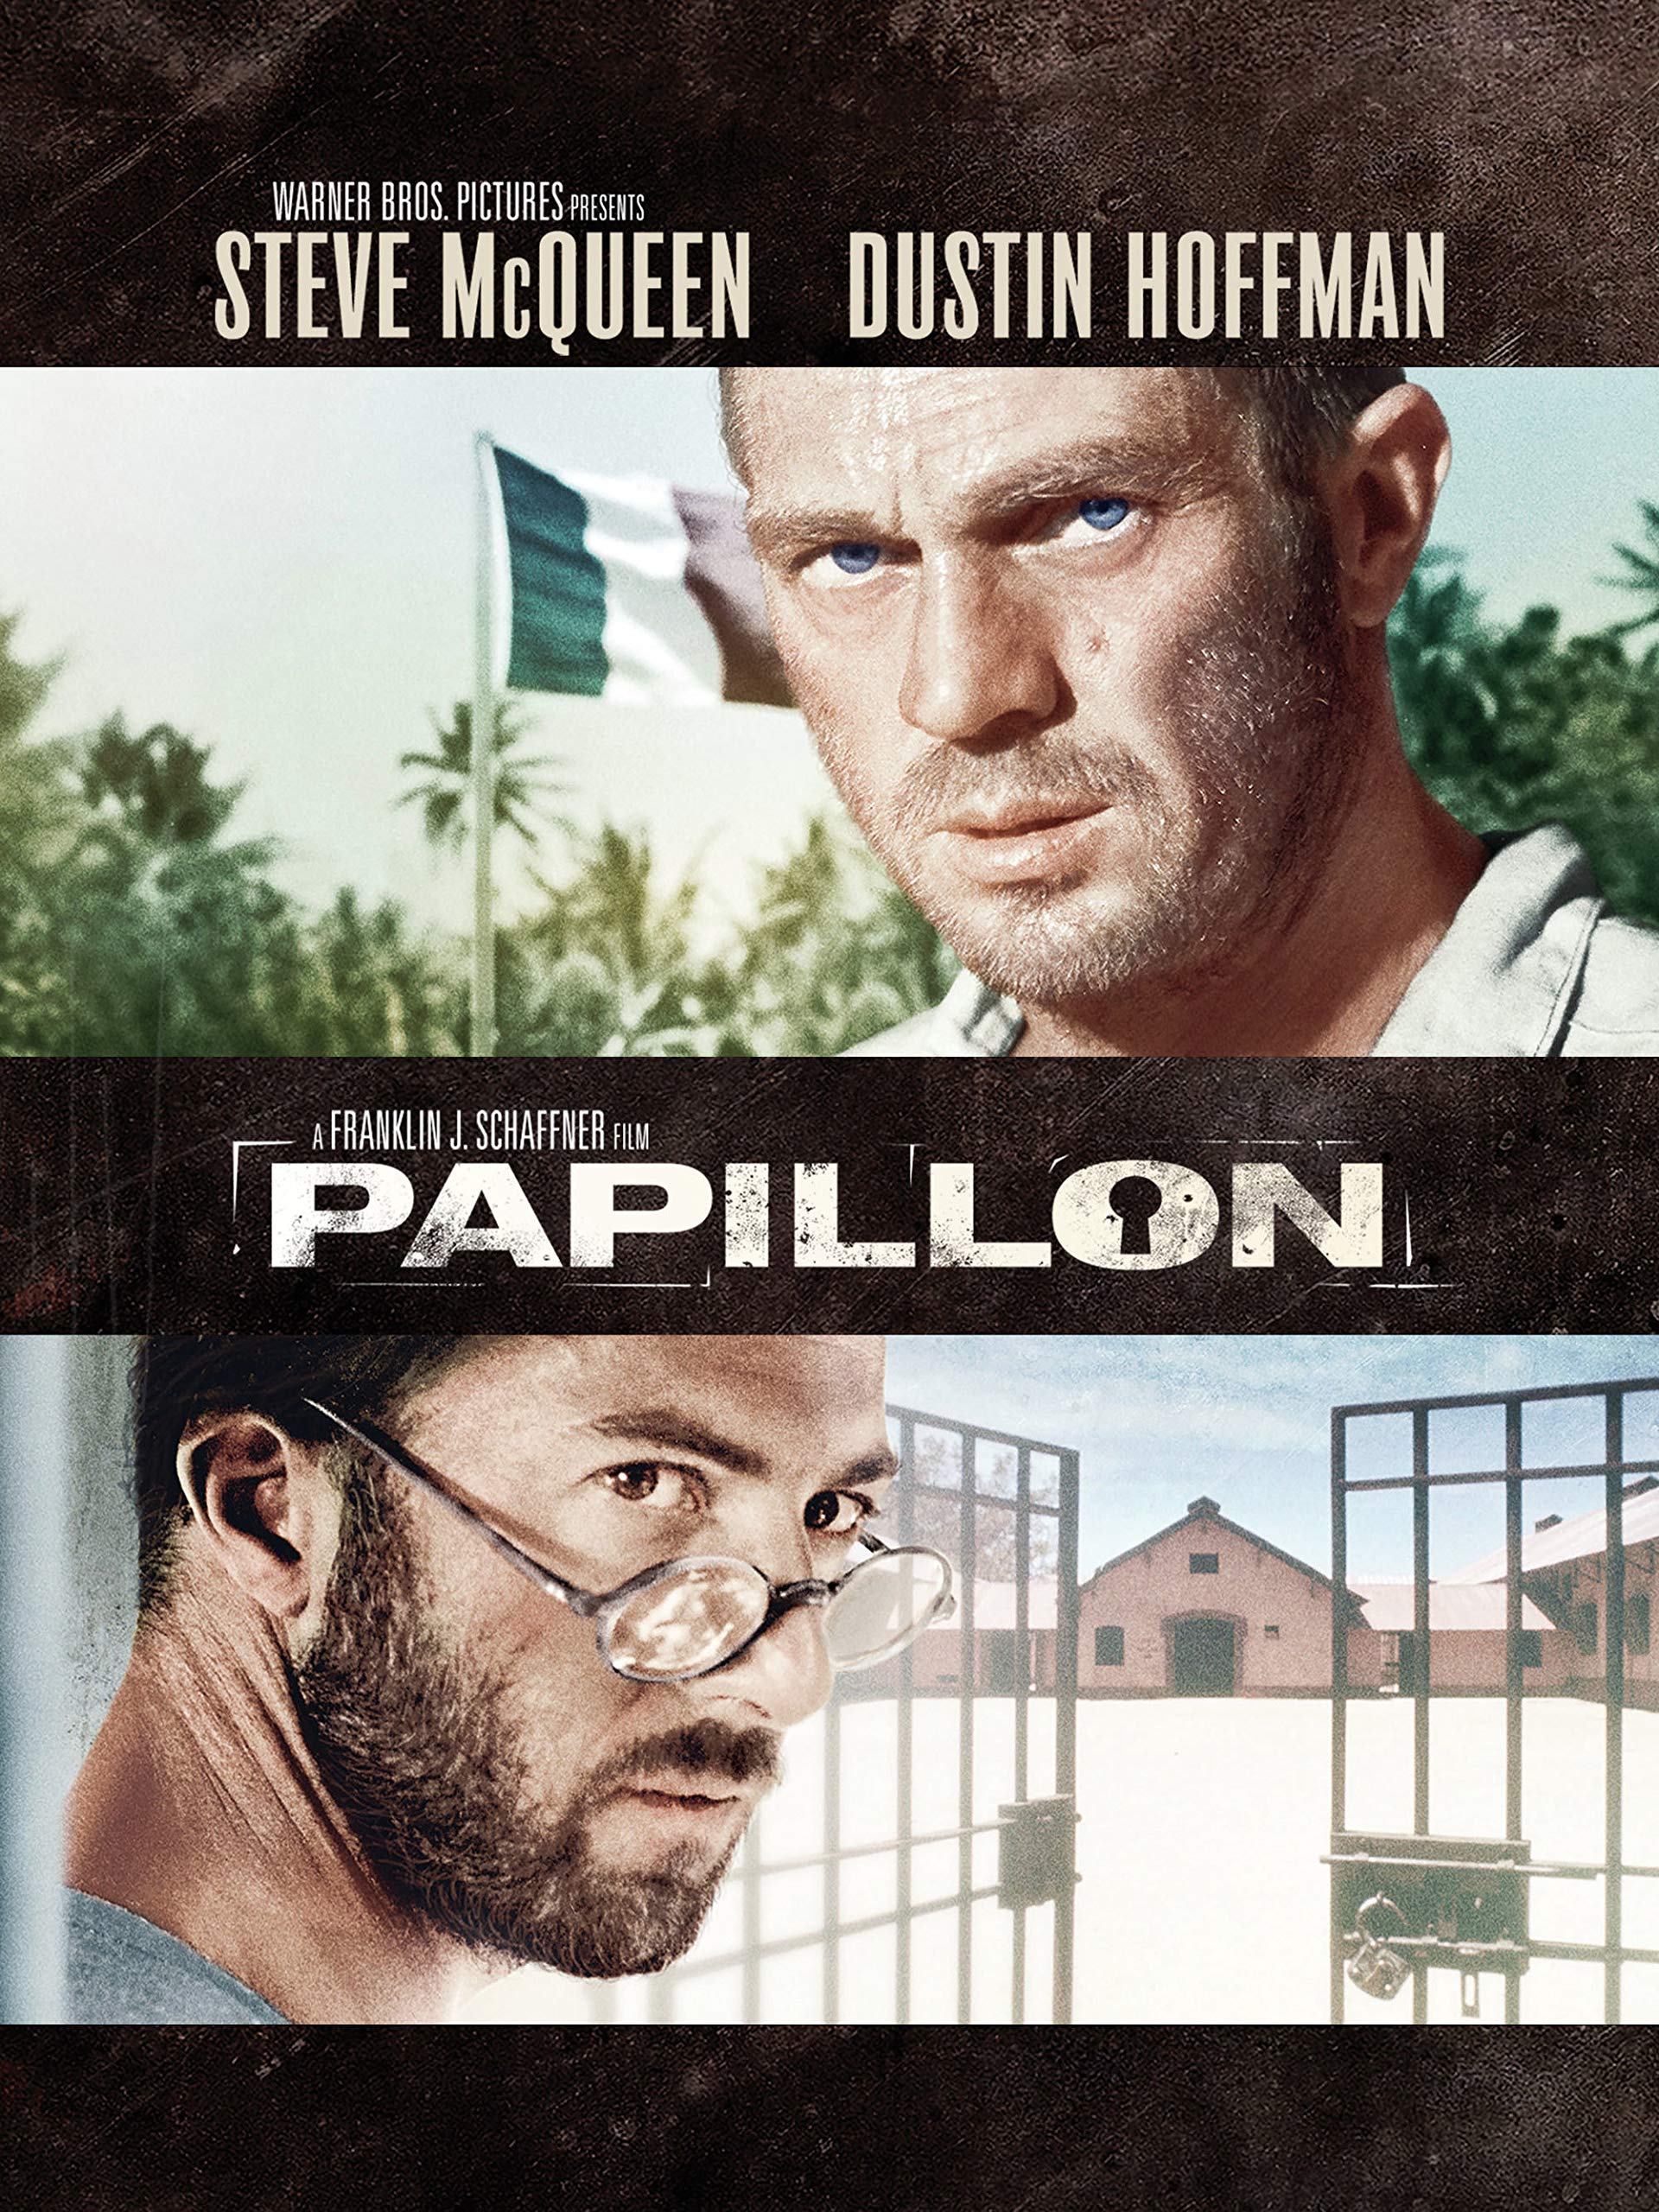 Papillon 2018 Movie Still Wallpapers